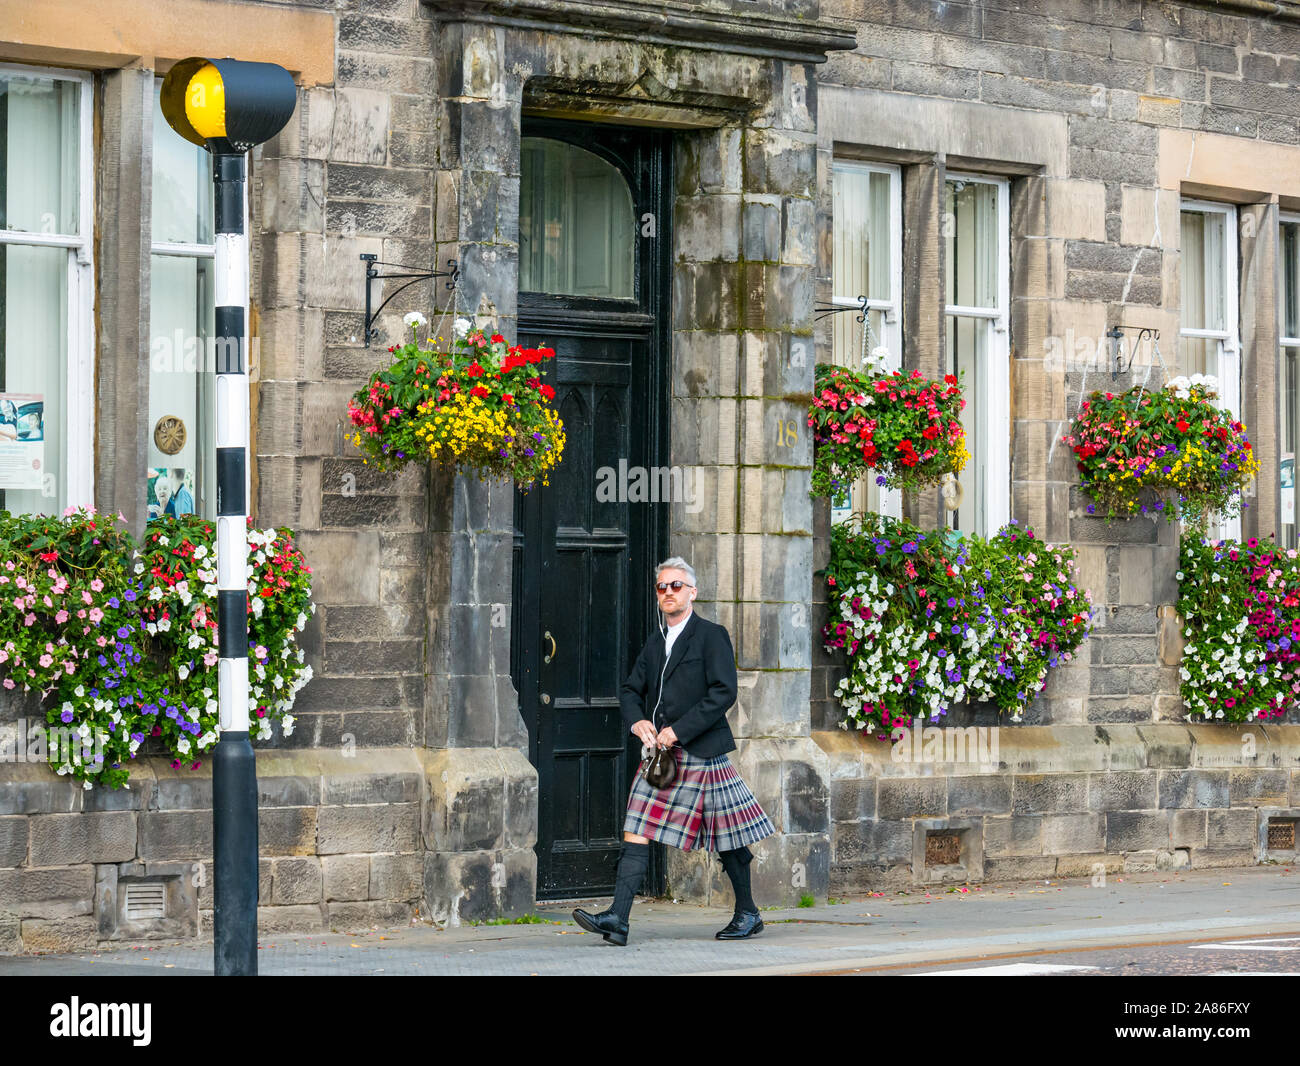 Scottish uomo che indossa kilt a piedi per un matrimonio all'ufficio del registro, Tay Street, Perth City, Scotland, Regno Unito Foto Stock